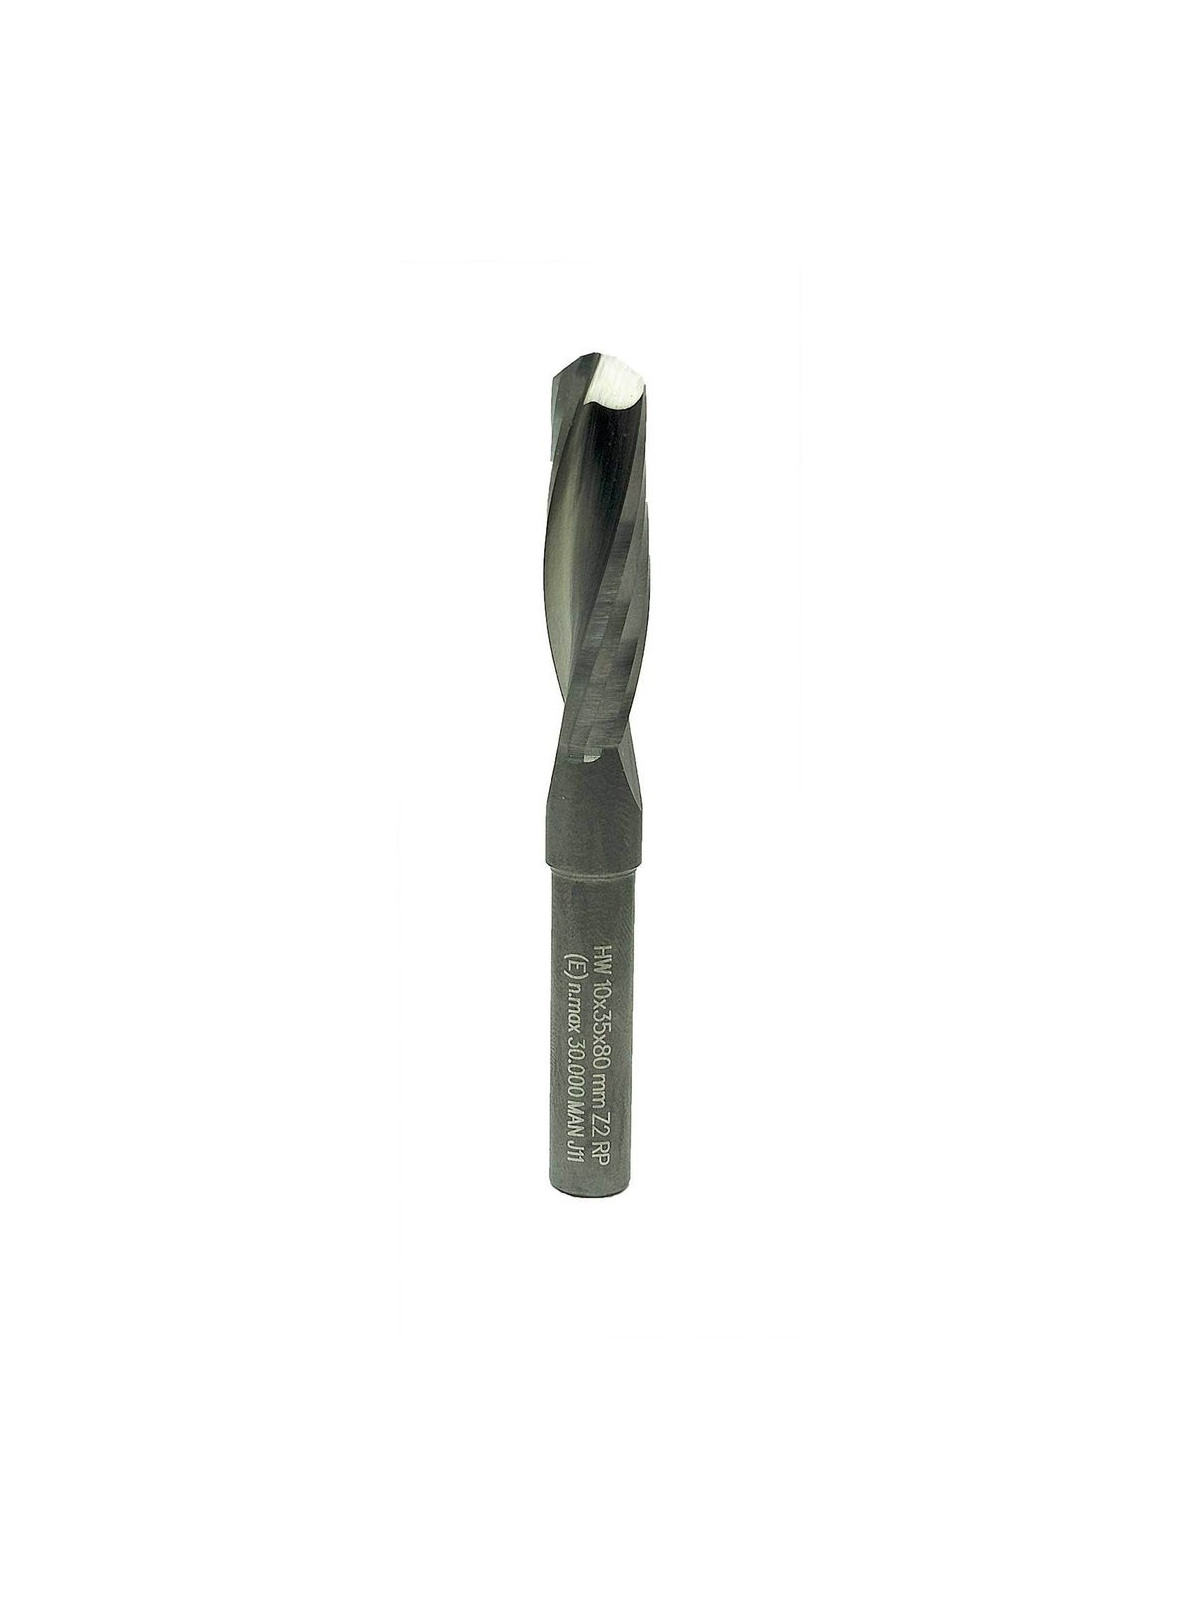 ENT Spiral bit solid carbide 10 mm Two flute ENT 10032 | JVL-Europe